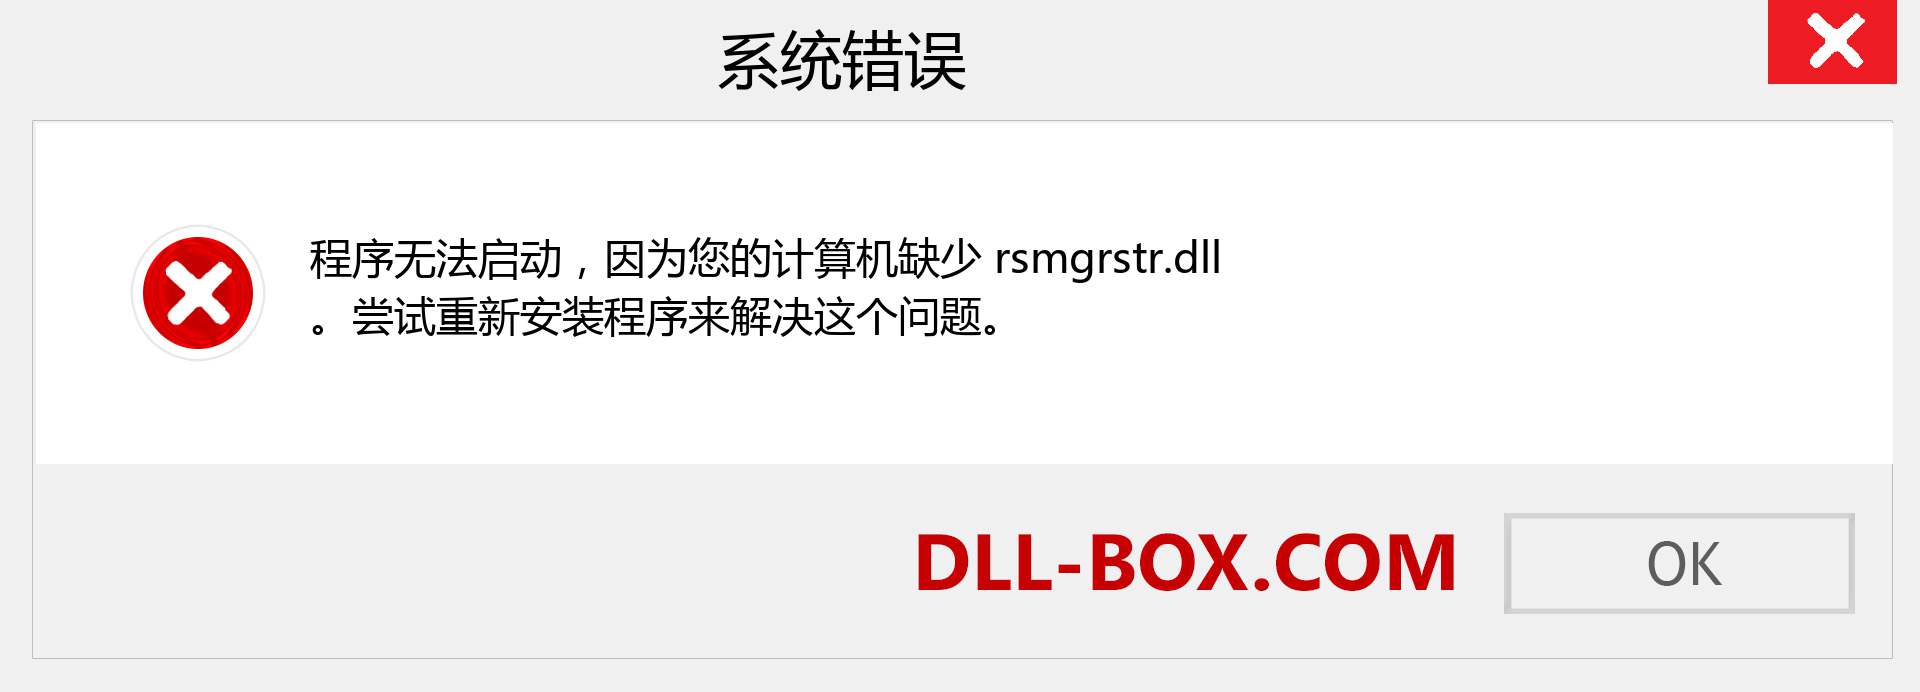 rsmgrstr.dll 文件丢失？。 适用于 Windows 7、8、10 的下载 - 修复 Windows、照片、图像上的 rsmgrstr dll 丢失错误